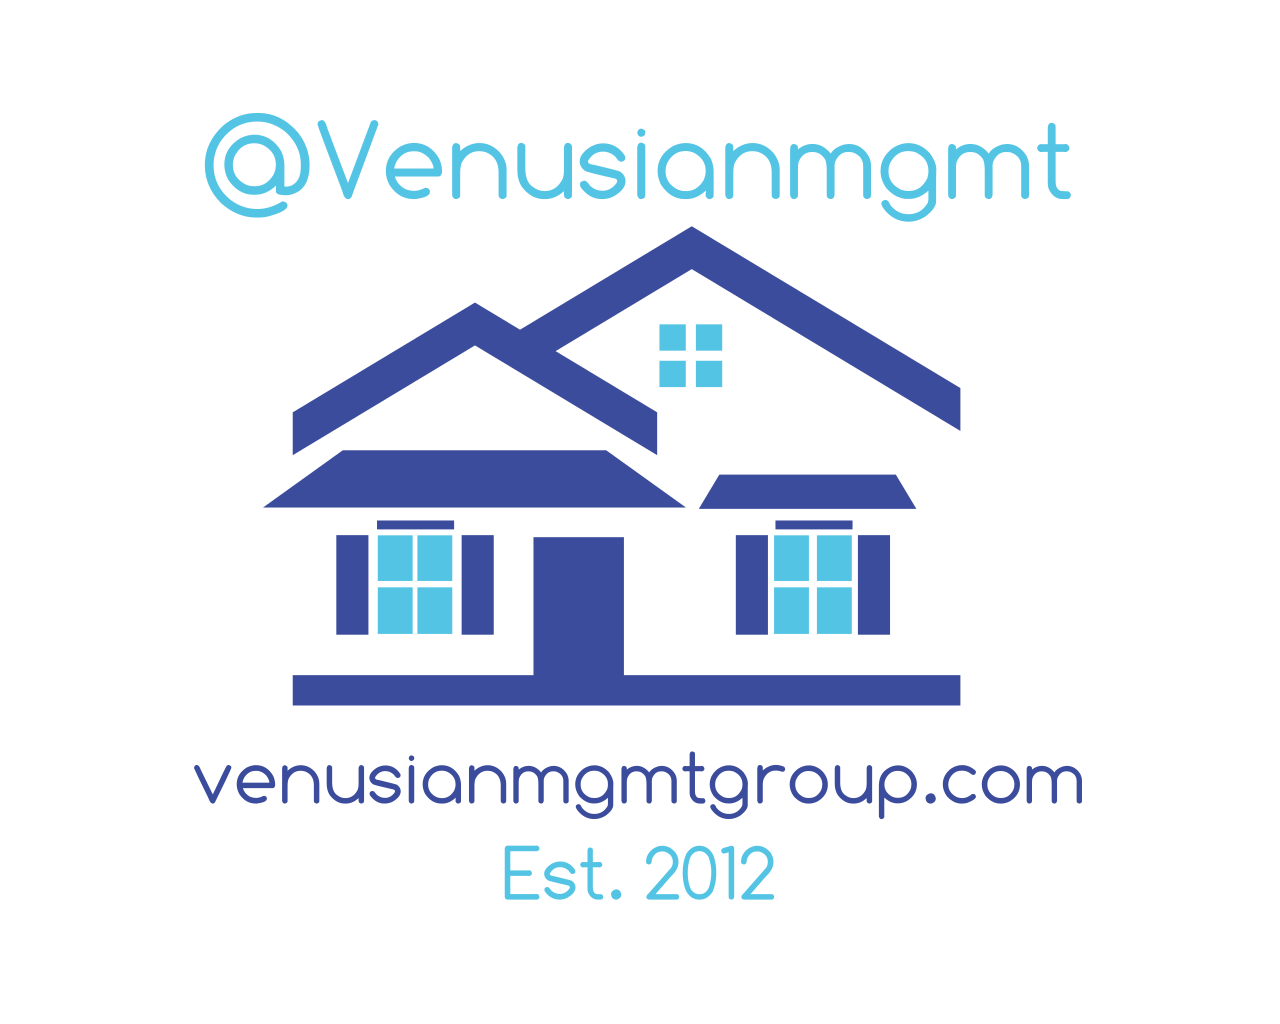 Venusian Management Group I LP